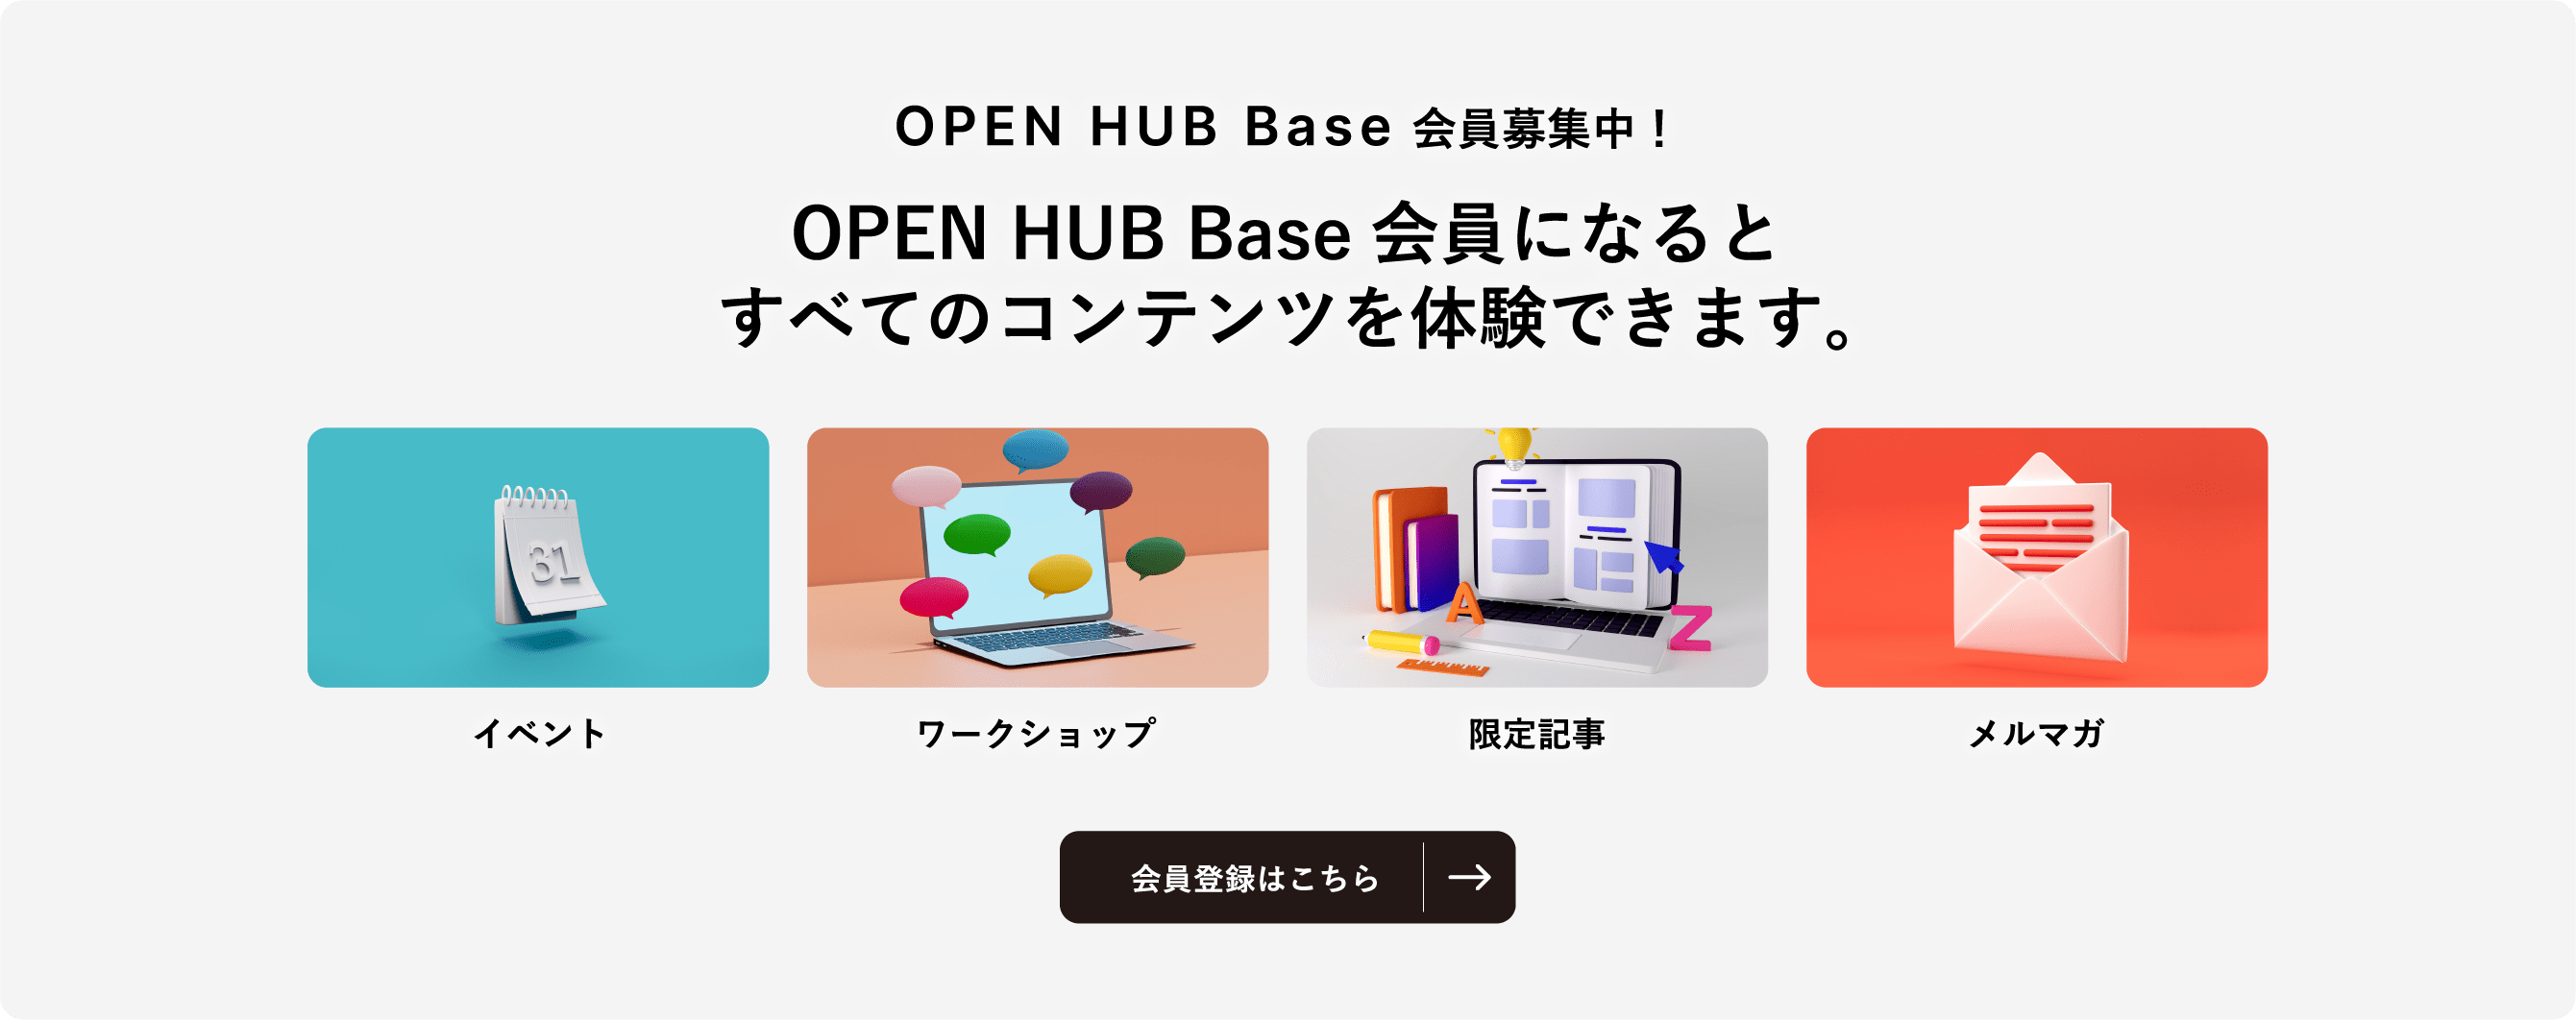 OPEN HUB Base 会員募集中！ OPEN HUB Base会員になるとすべてのコンテンツを体験できます。 イベント ワークショップ 限定記事 メルマガ 会員登録はこちら